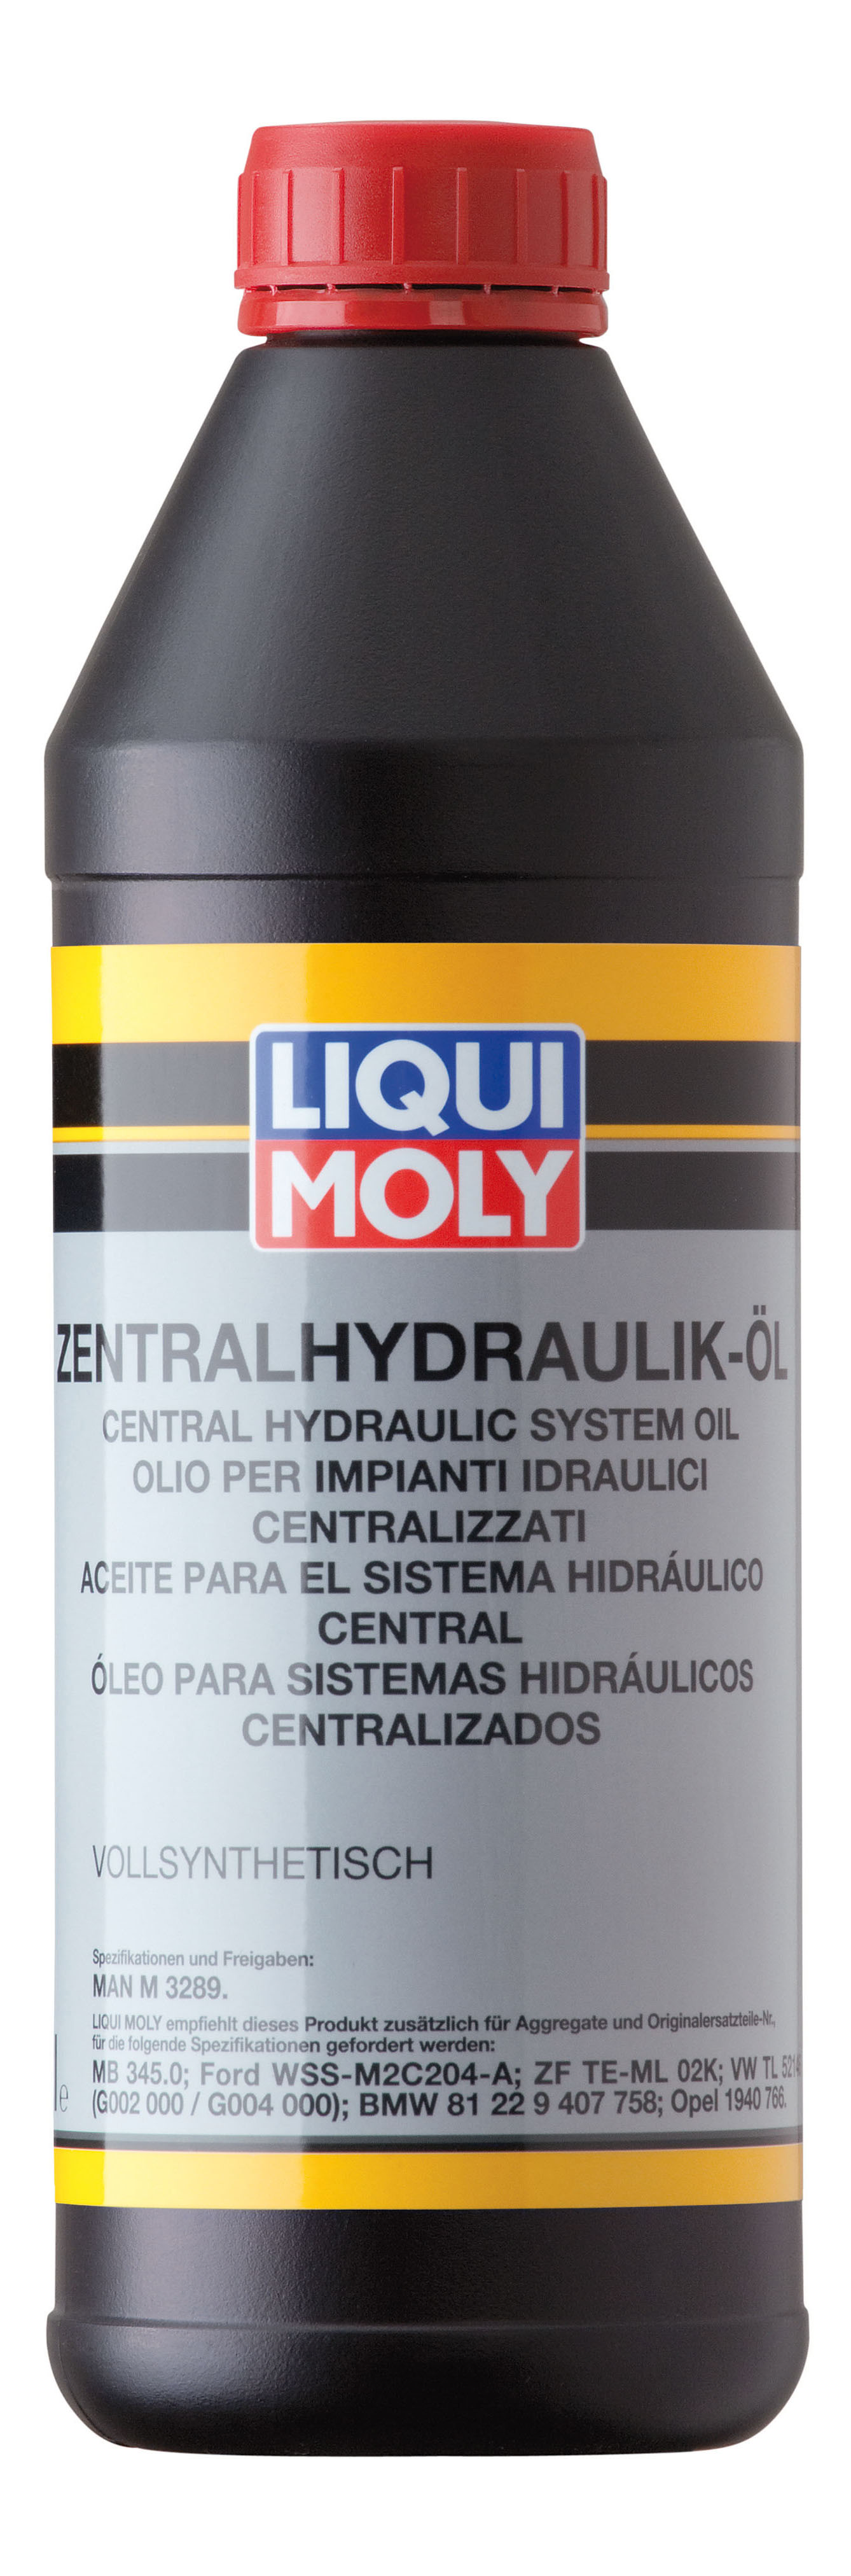 фото Синтетическая гидравлическая жидкость zentralhydraulik-oil liqui moly